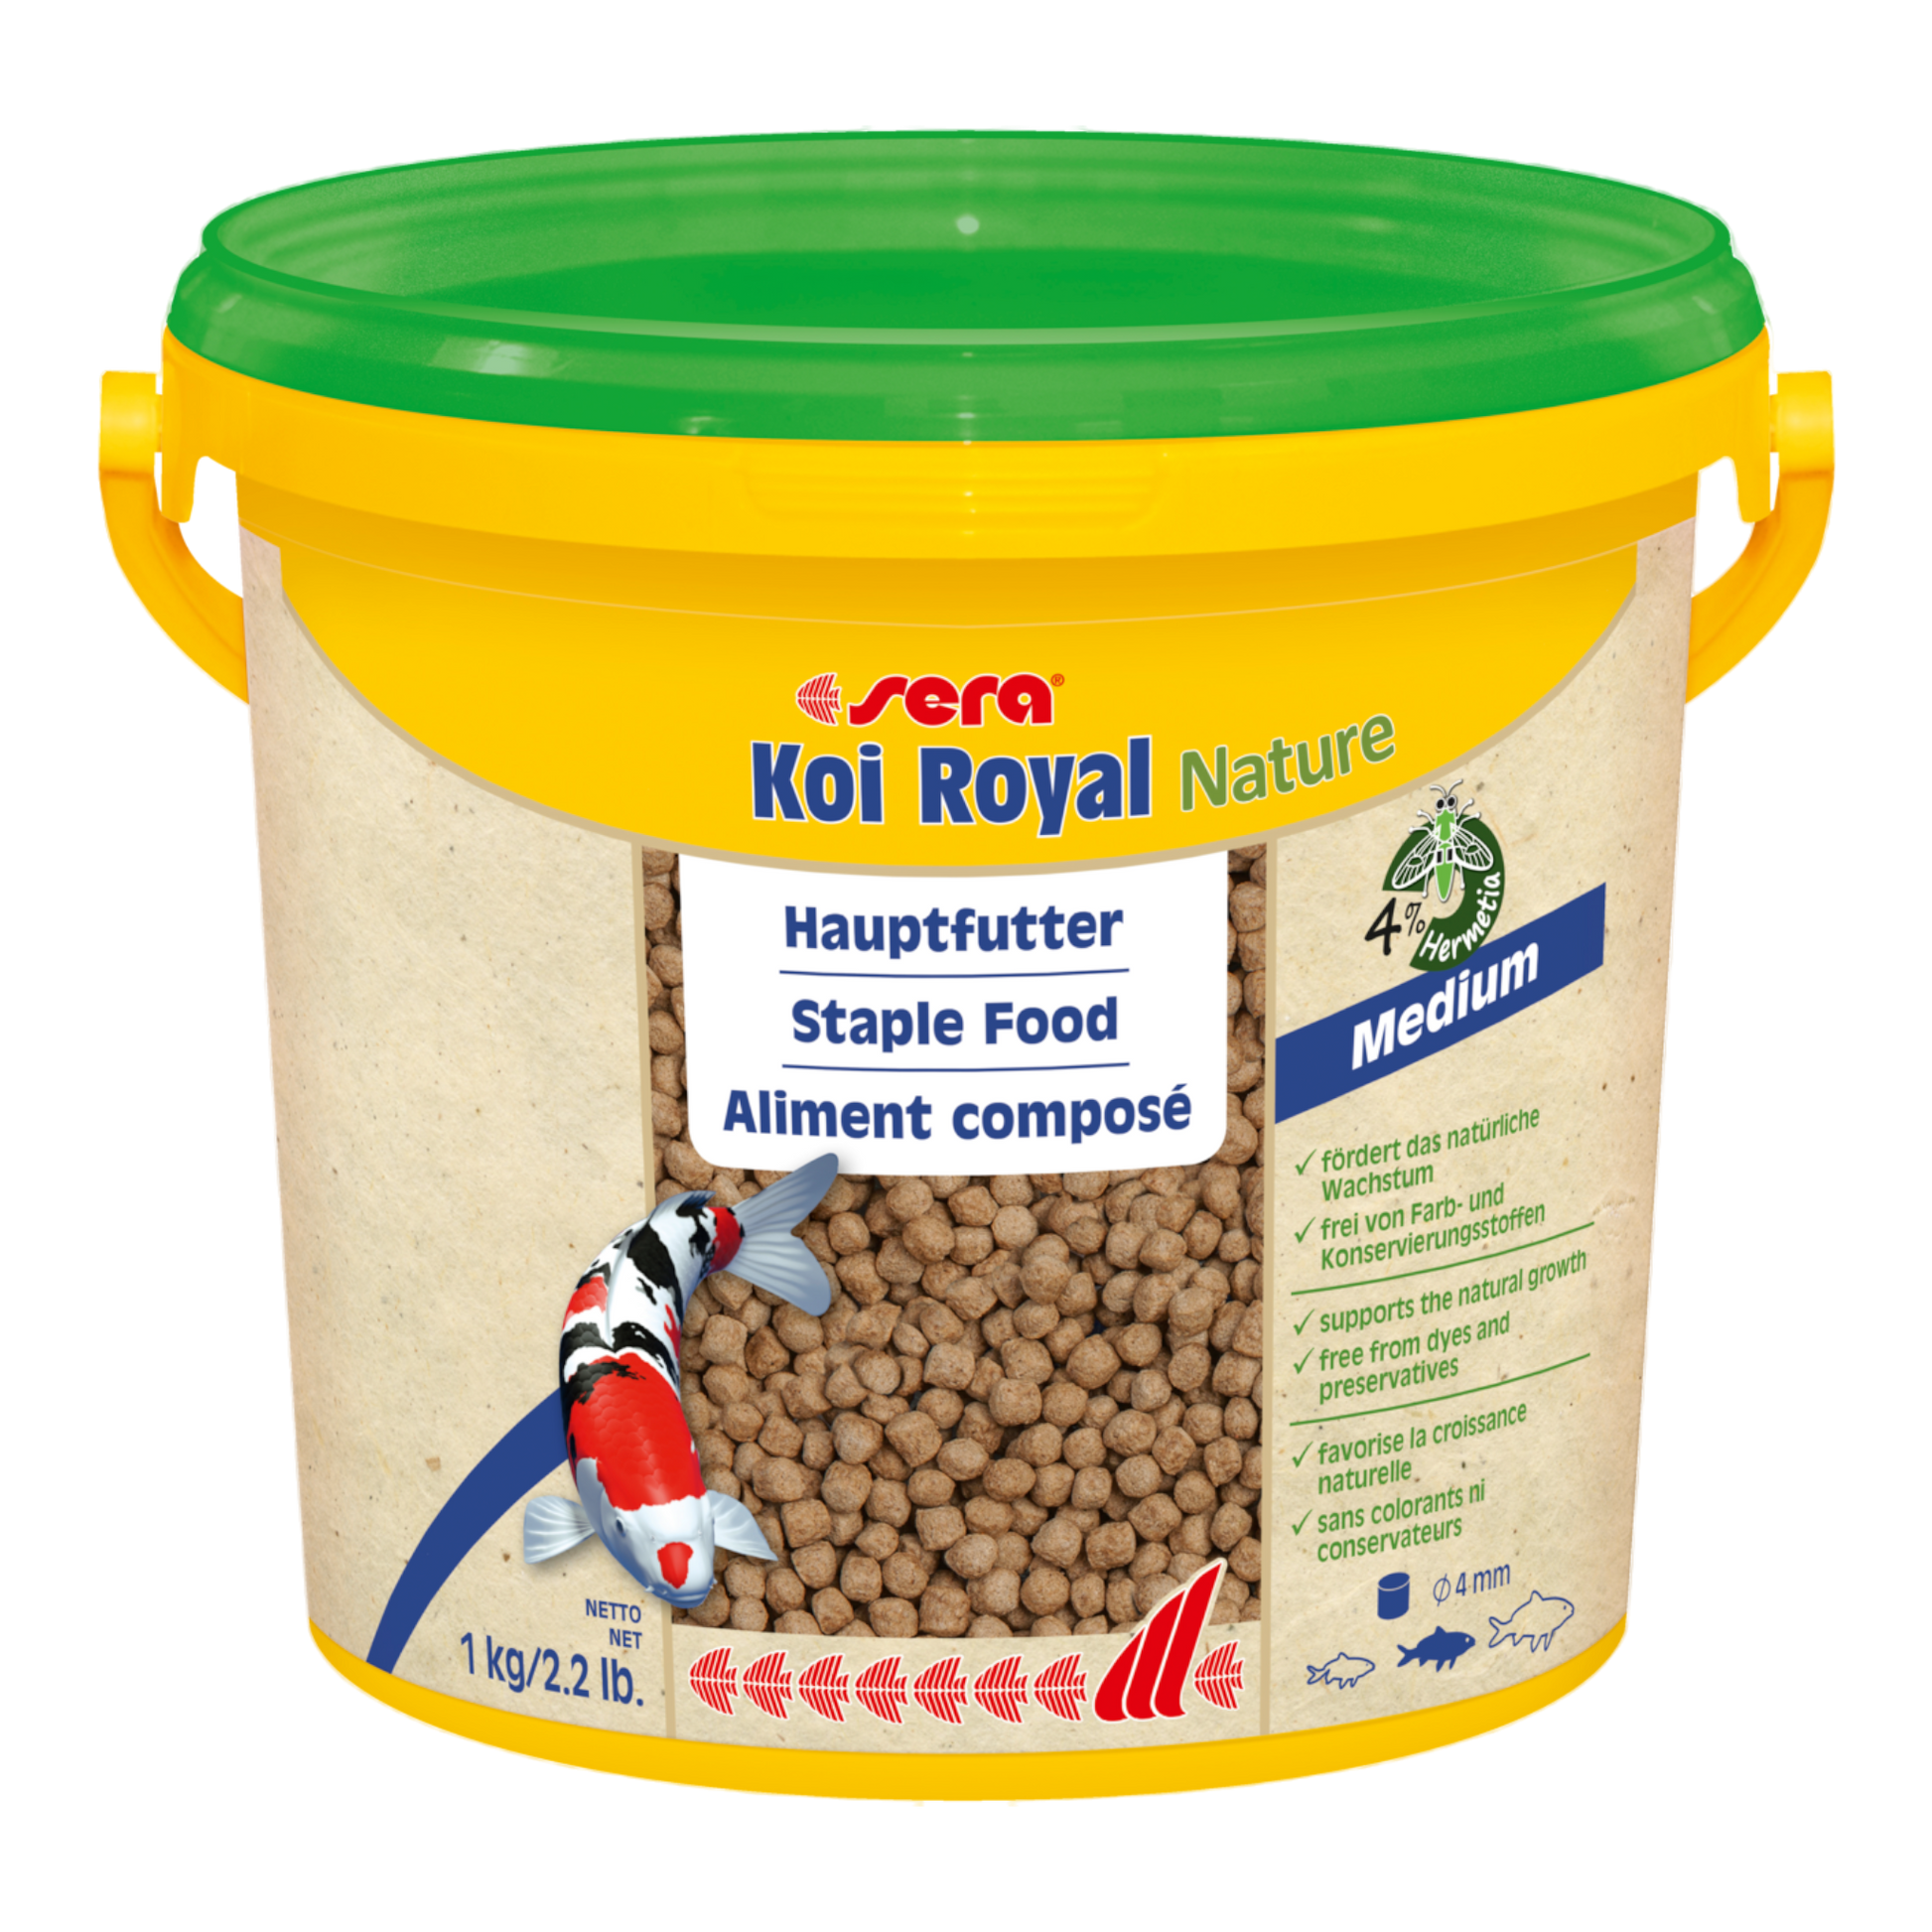 sera Koi Royal Nature Medium (4 mm) ist das Hauptfutter aus schonend hergestelltem Granulat ohne Farb- und Konservierungsstoffe.